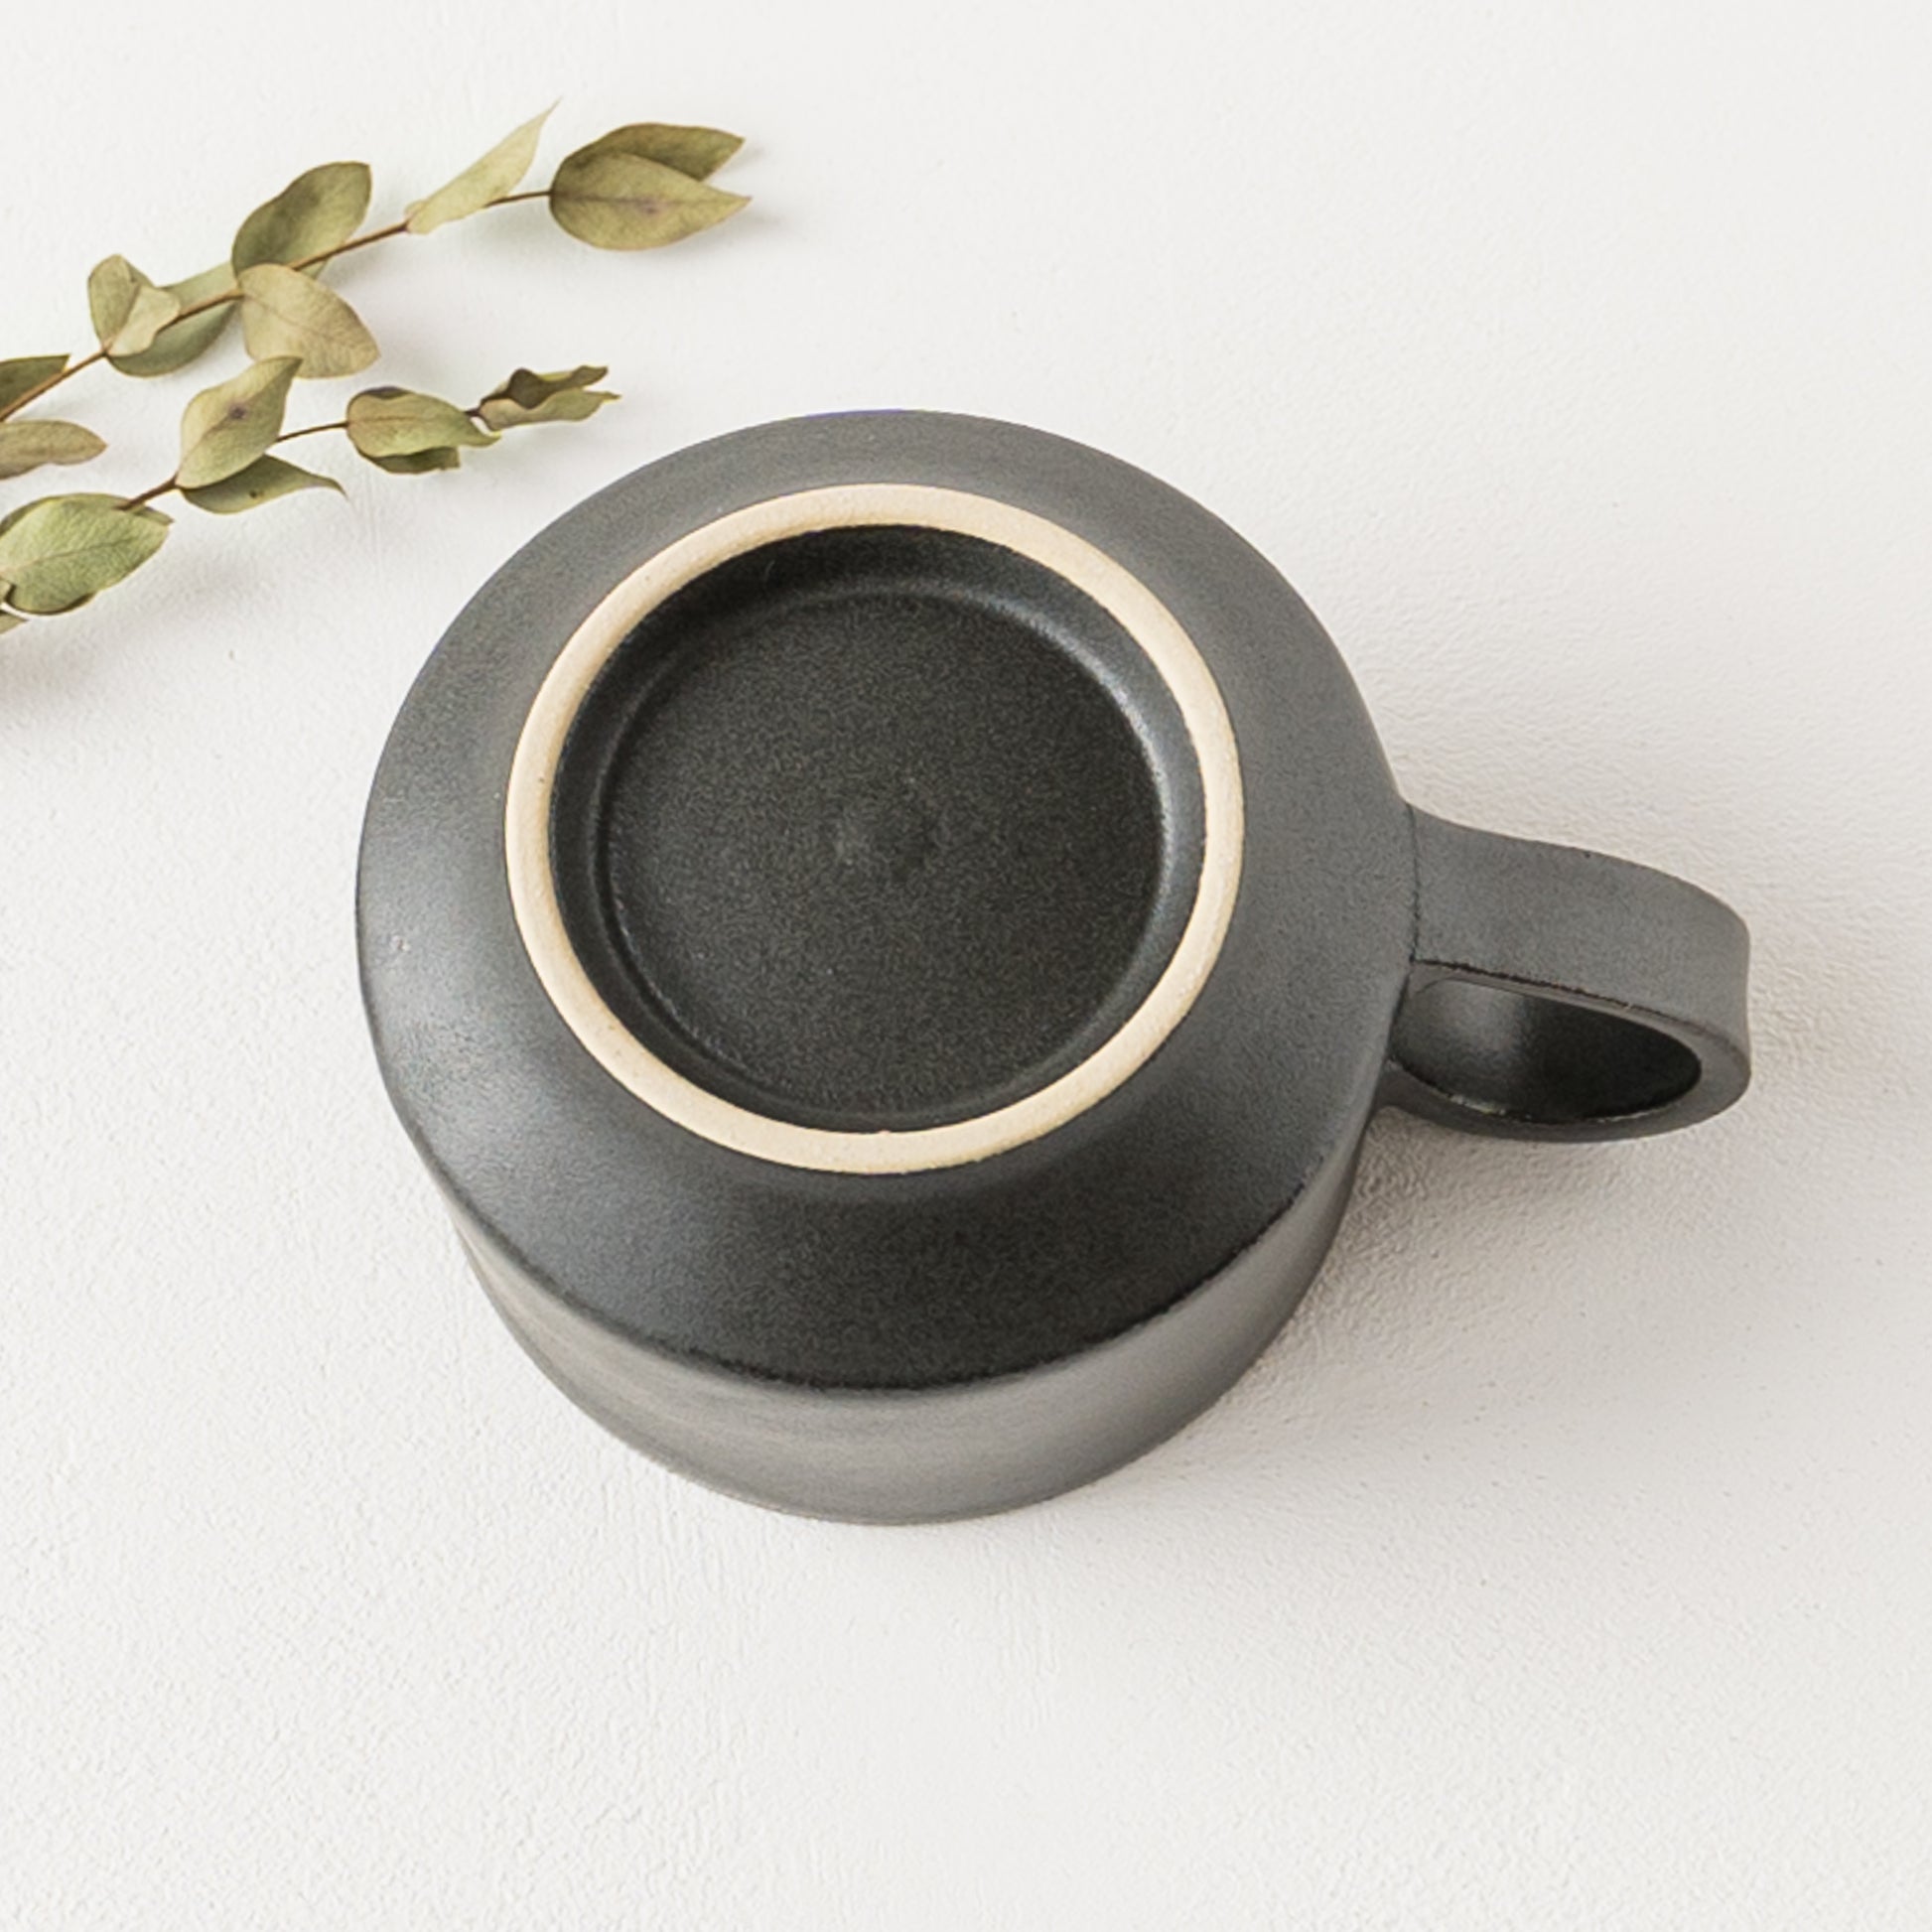 上品な時間を演出してくれるyoshida potteryのコーヒーカップ